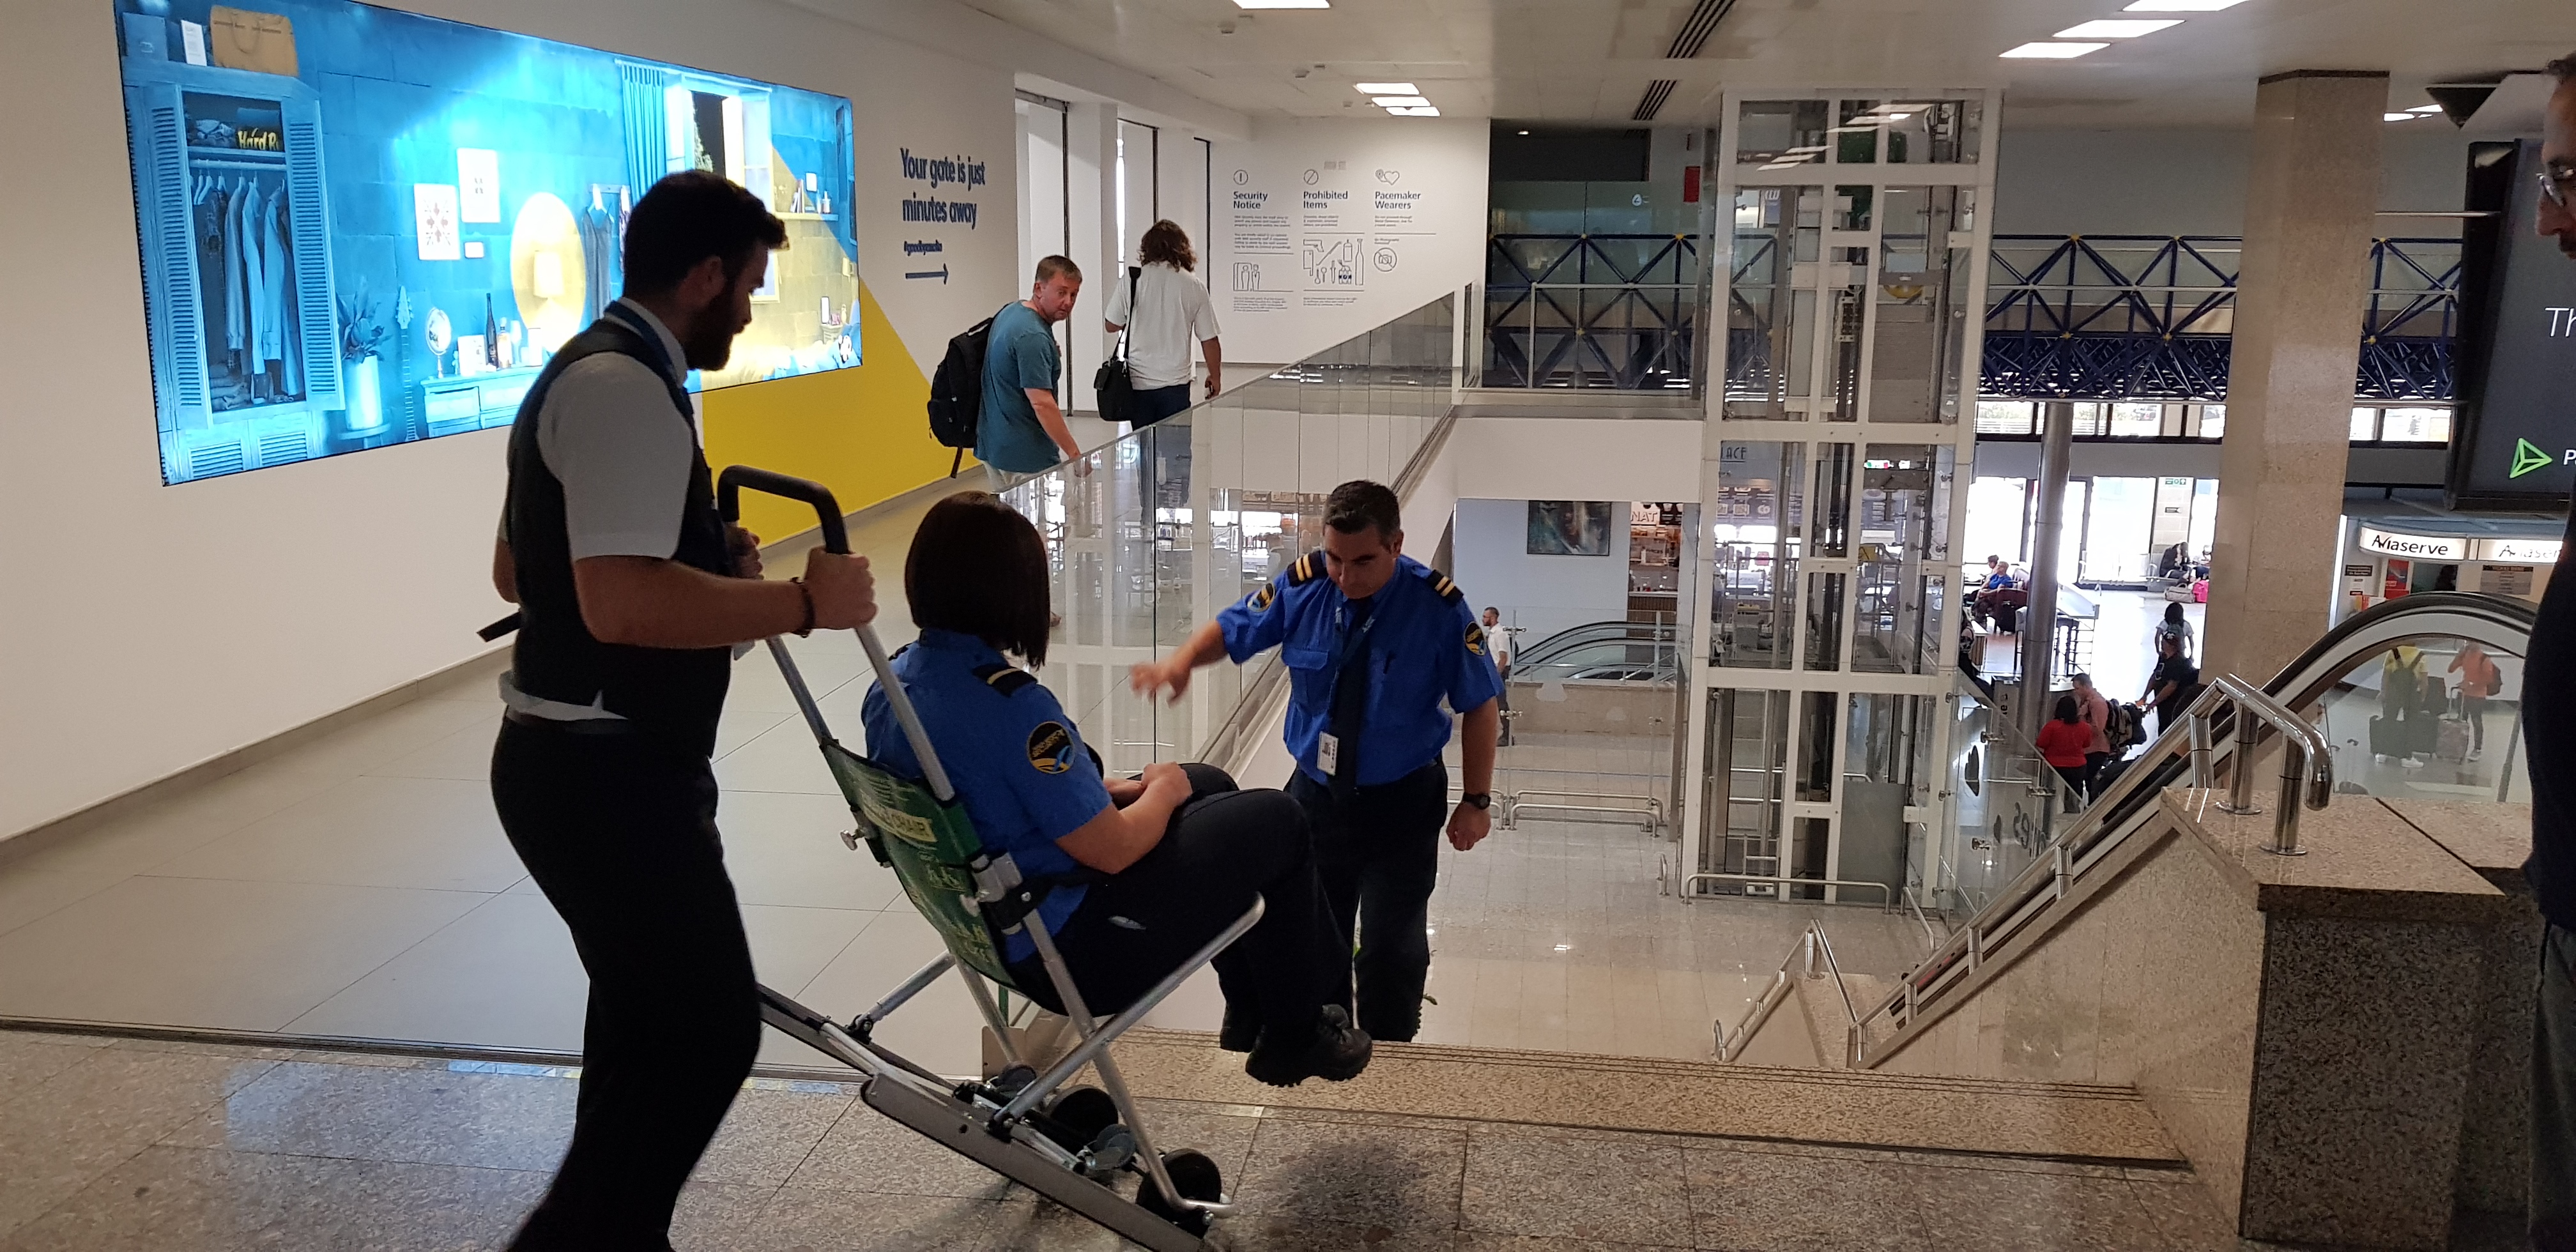 Escape-Chair evac chair evacuation airport